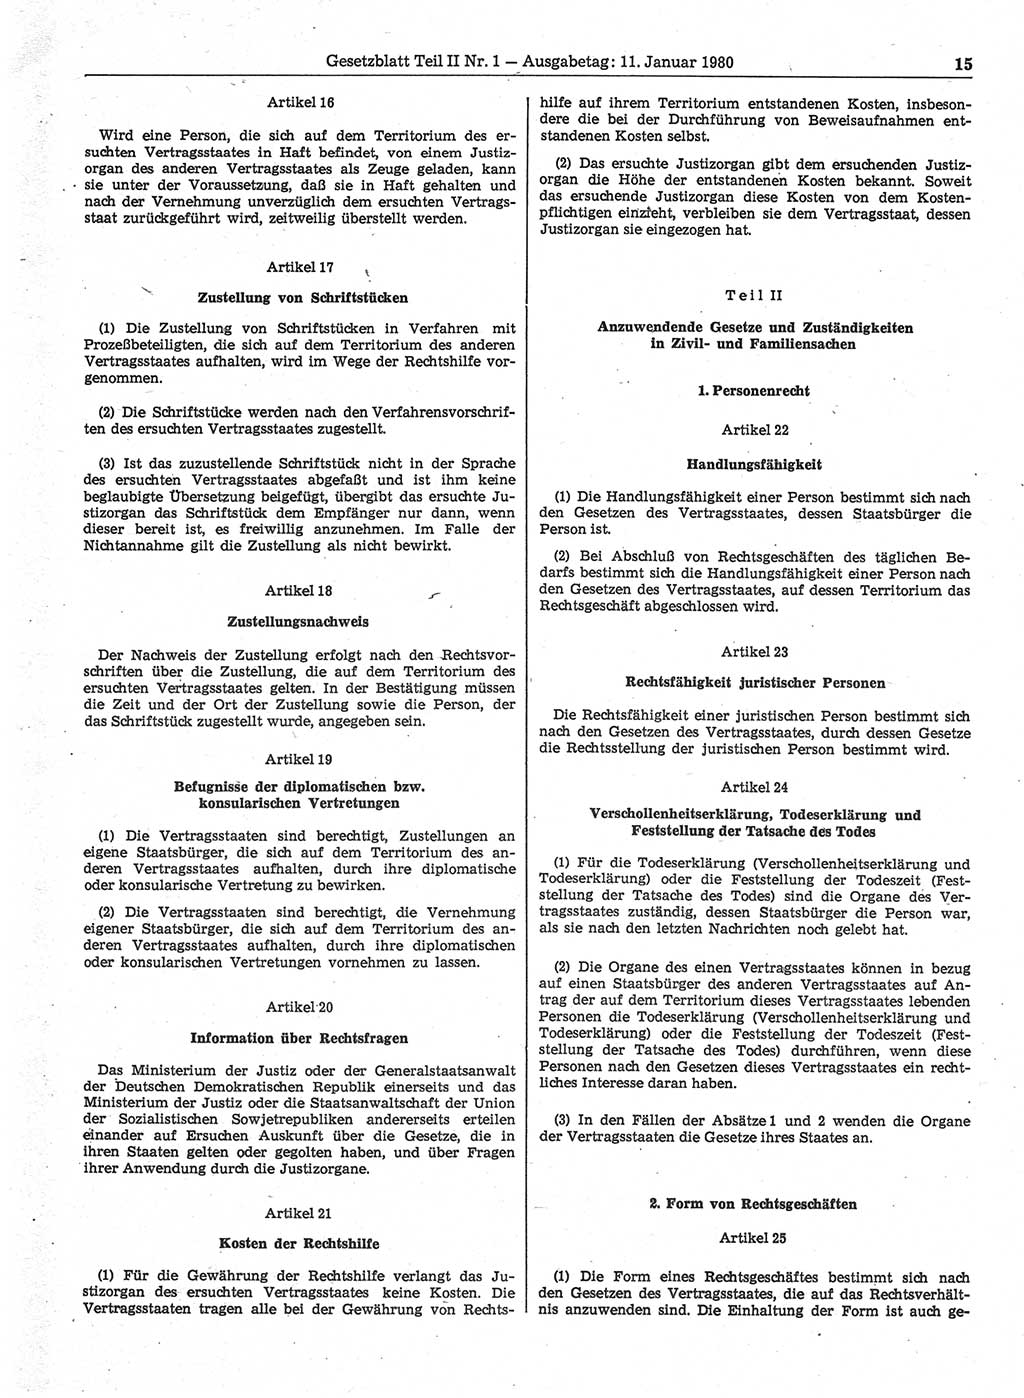 Gesetzblatt (GBl.) der Deutschen Demokratischen Republik (DDR) Teil ⅠⅠ 1980, Seite 15 (GBl. DDR ⅠⅠ 1980, S. 15)